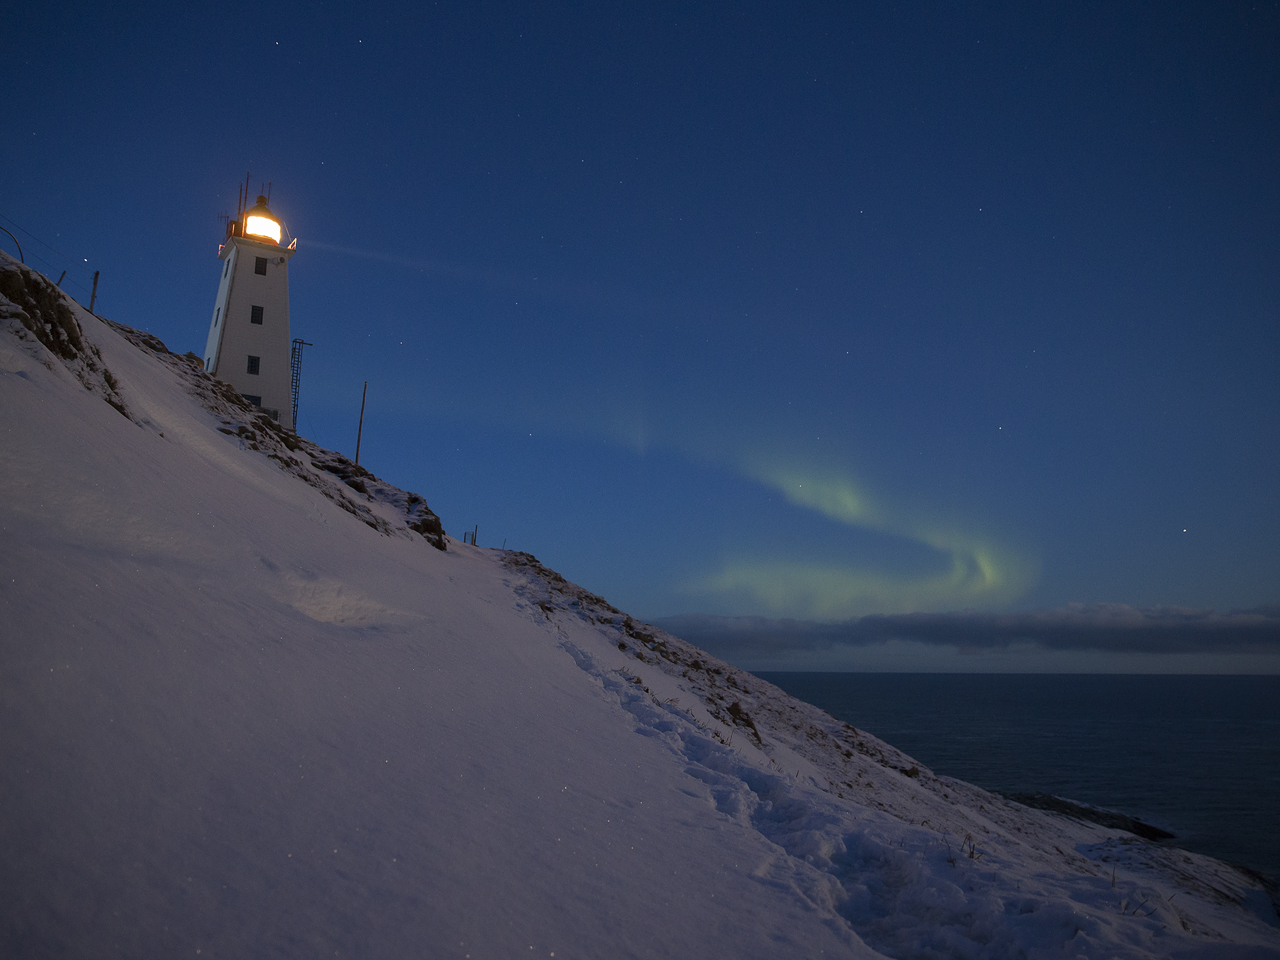 Hornöya norrsken aurora borealis foto:Niclas Ahlberg